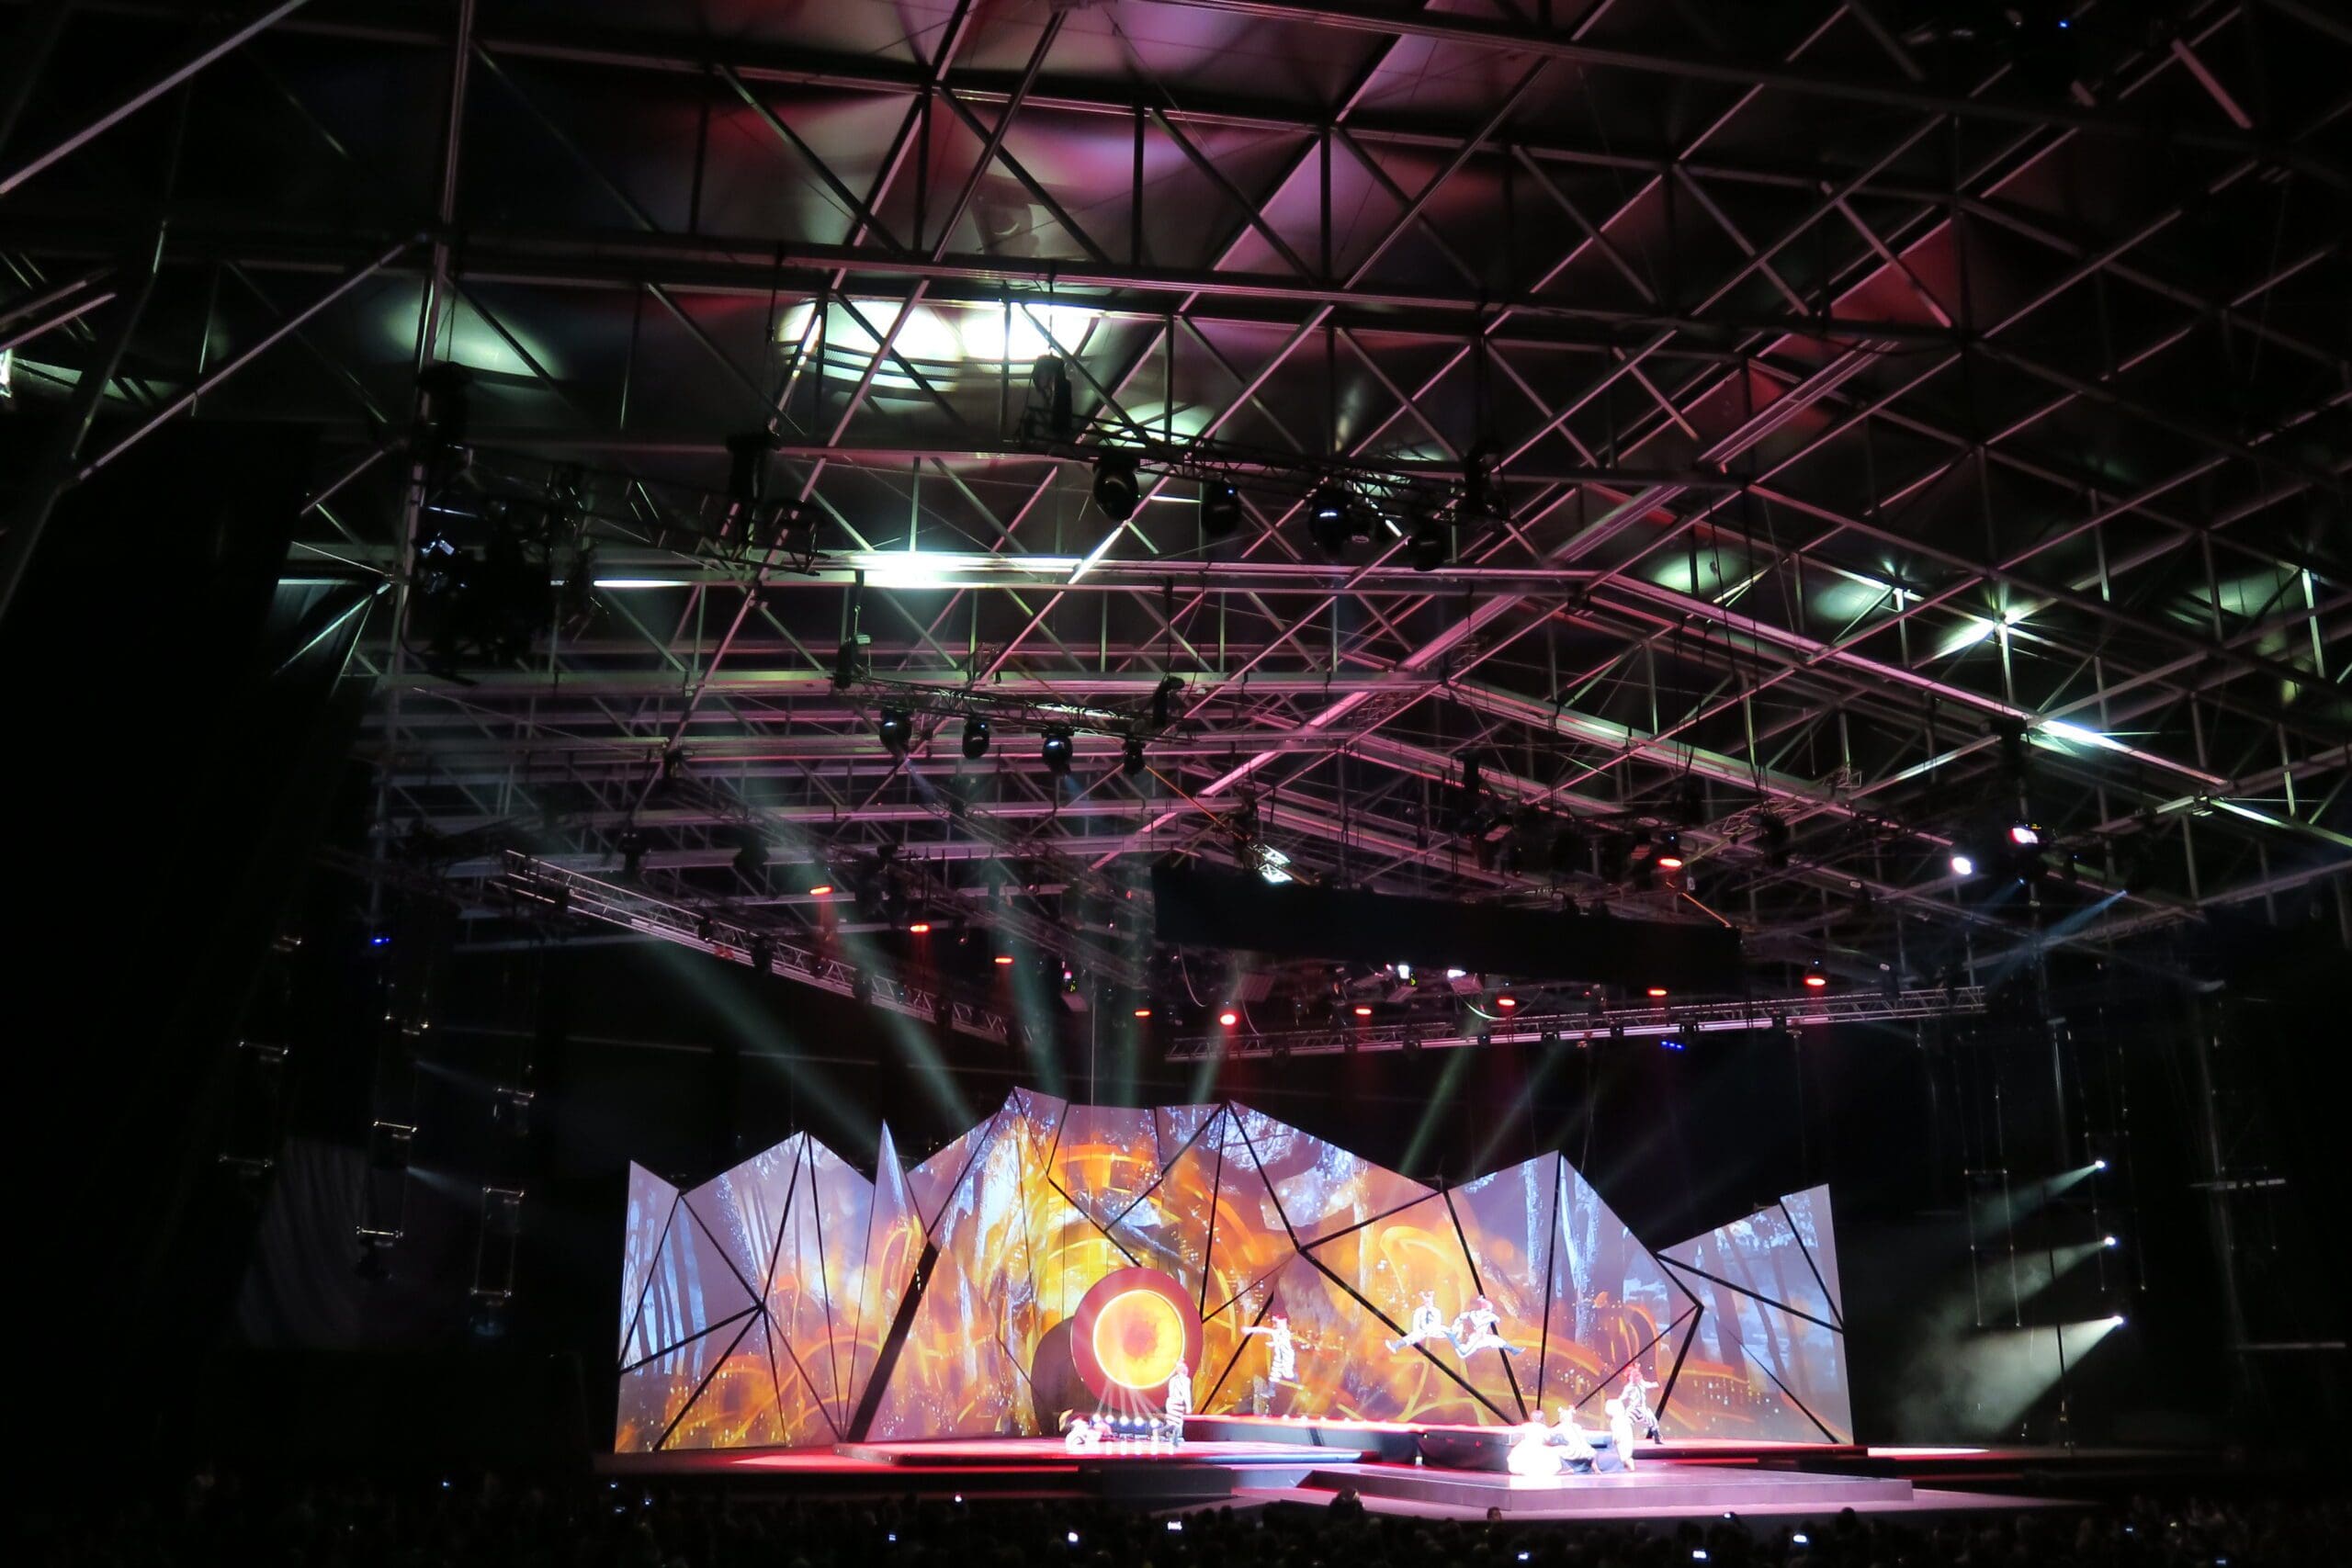 Cirque Du Soleil – A Spectacular Venue for a Spectacular Show